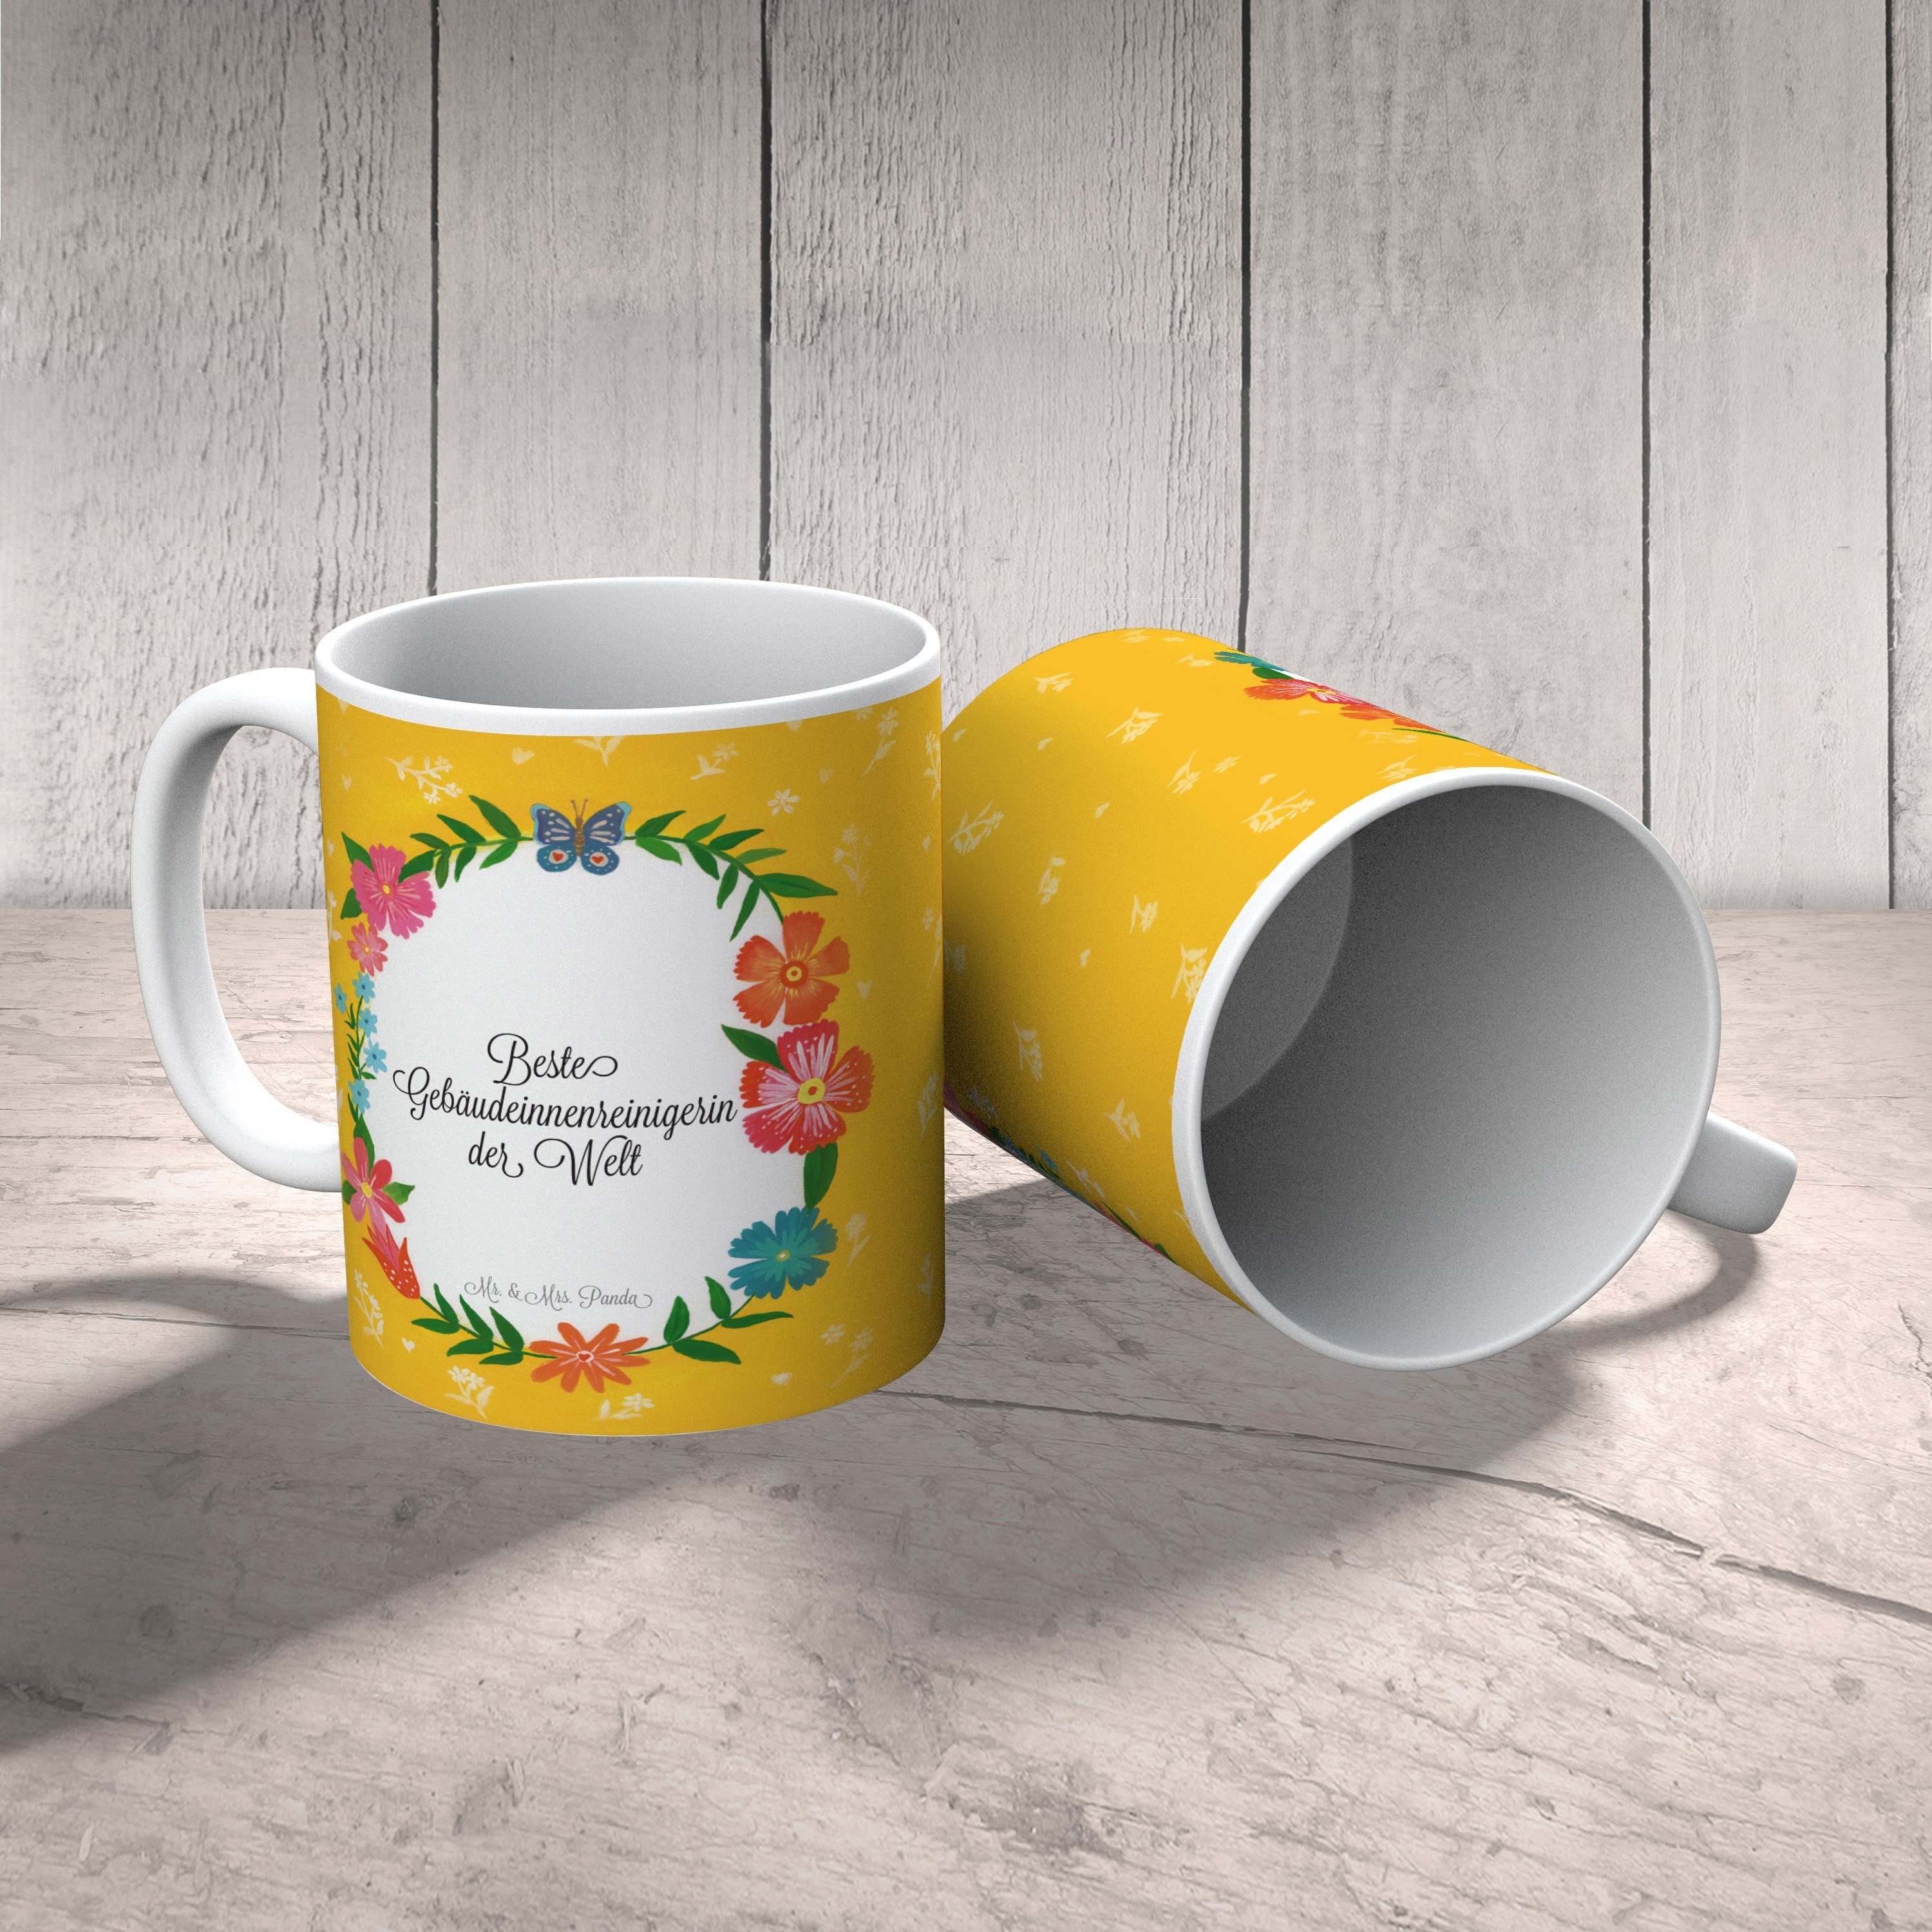 Tasse Keramik & Panda Mrs. - Kaffeebecher, Geschenk, Stu, Gebäudeinnenreinigerin Mr. Schenken, Tasse,